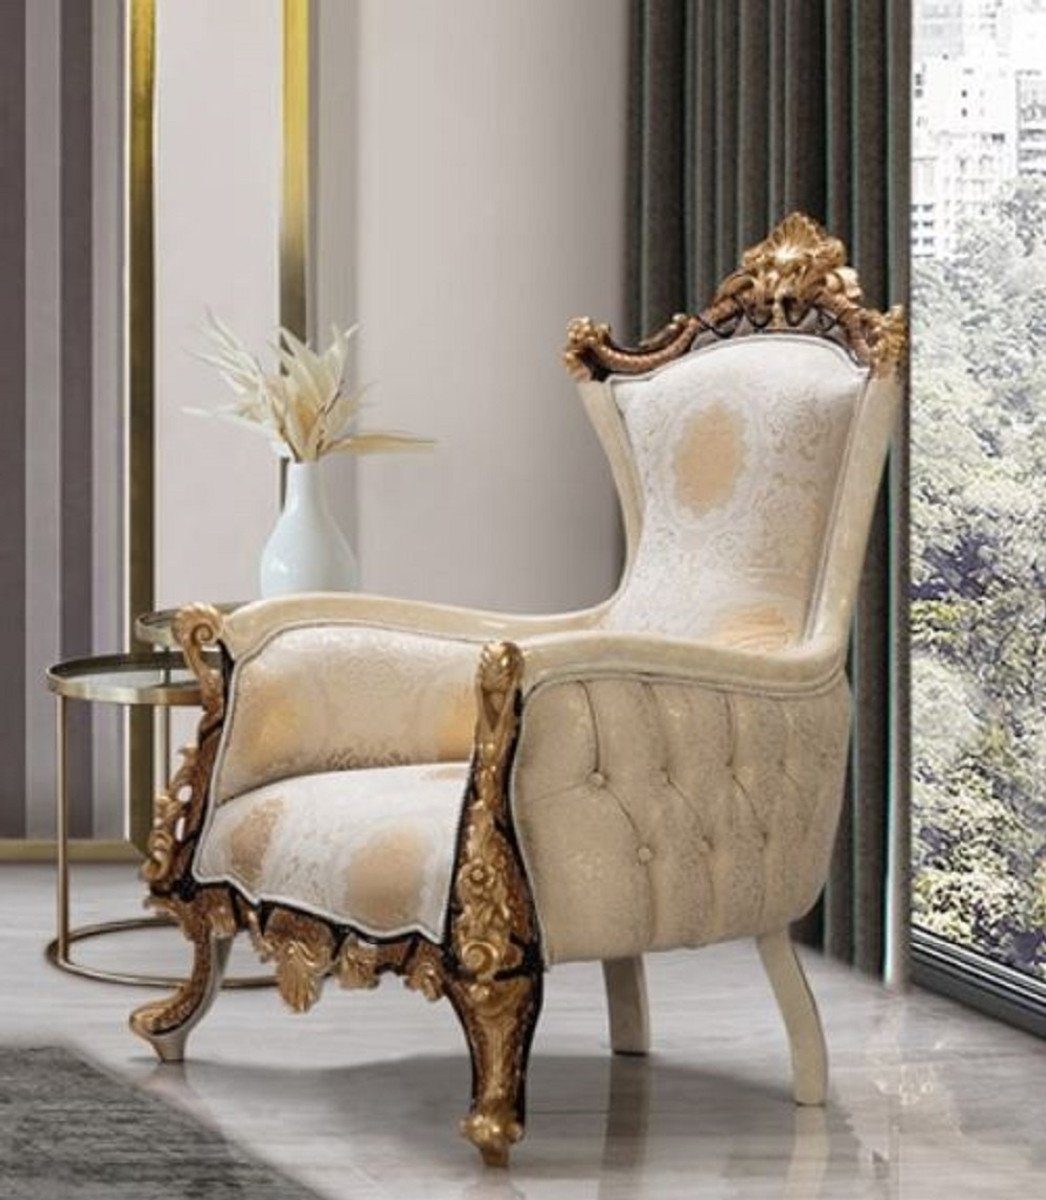 Casa Padrino Sessel Casa Padrino Luxus Barock Sessel Weiß / Beige / Creme / Schwarz / Gold - Prunkvoller Wohnzimmer Sessel mit elegantem Muster - Luxus Wohnzimmer Möbel im Barockstil - Barock Möbel - Barock Einrichtung